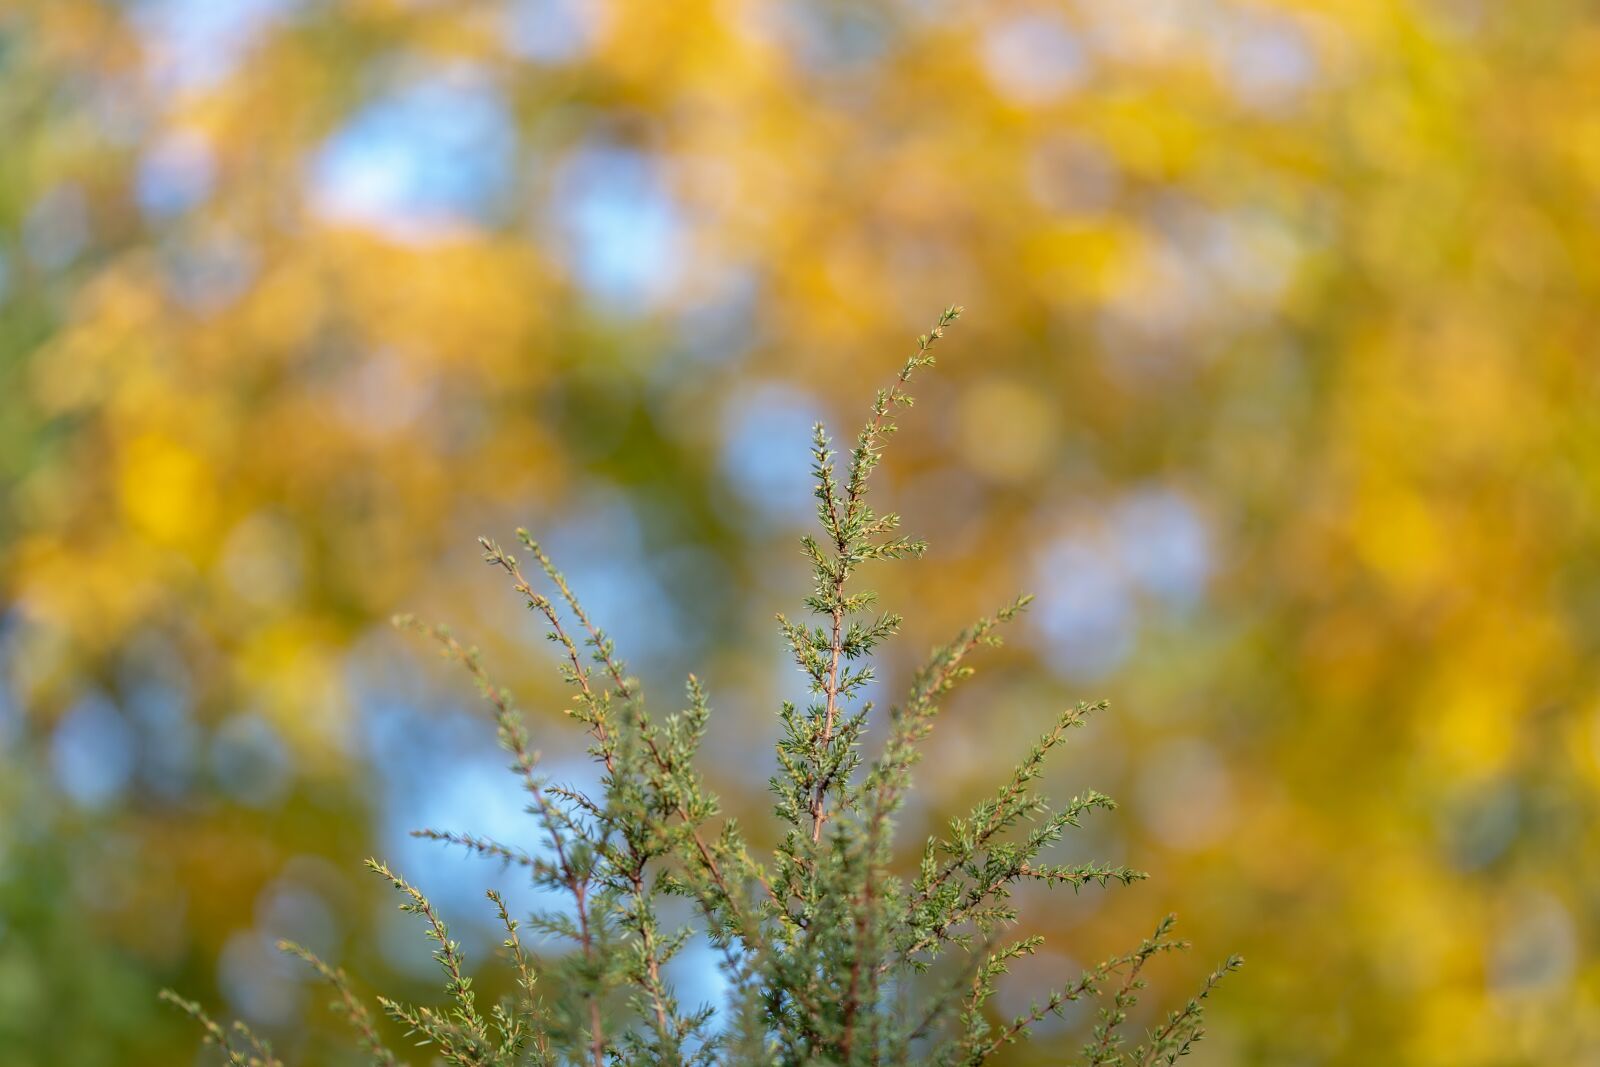 Sony a7 III sample photo. Autumn, fall foliage, fall photography